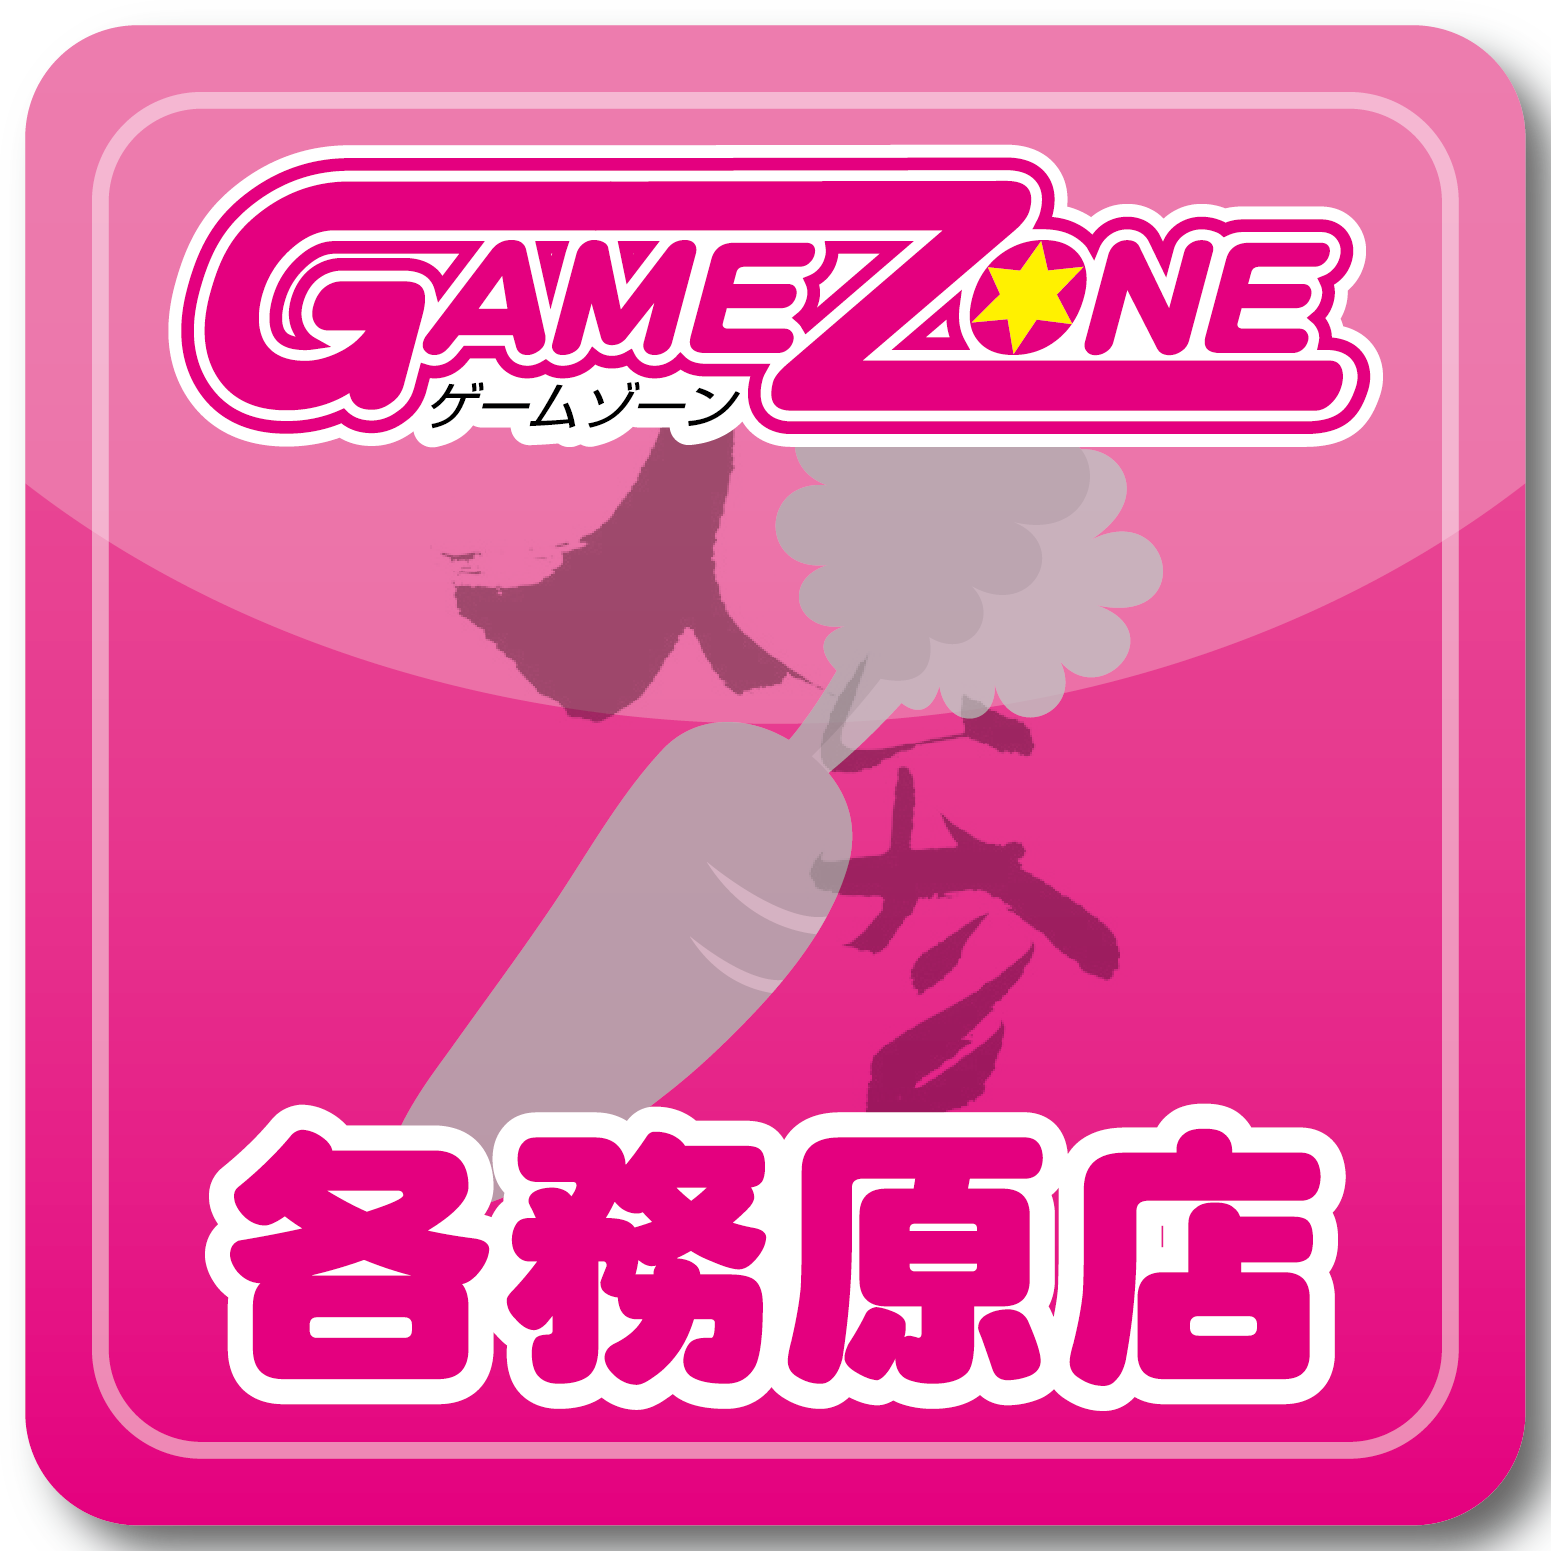 ゲームゾーン各務原店のTwitterです(´°ω°`)❤︎最新情報をお届けします(∗•ω•∗)!!